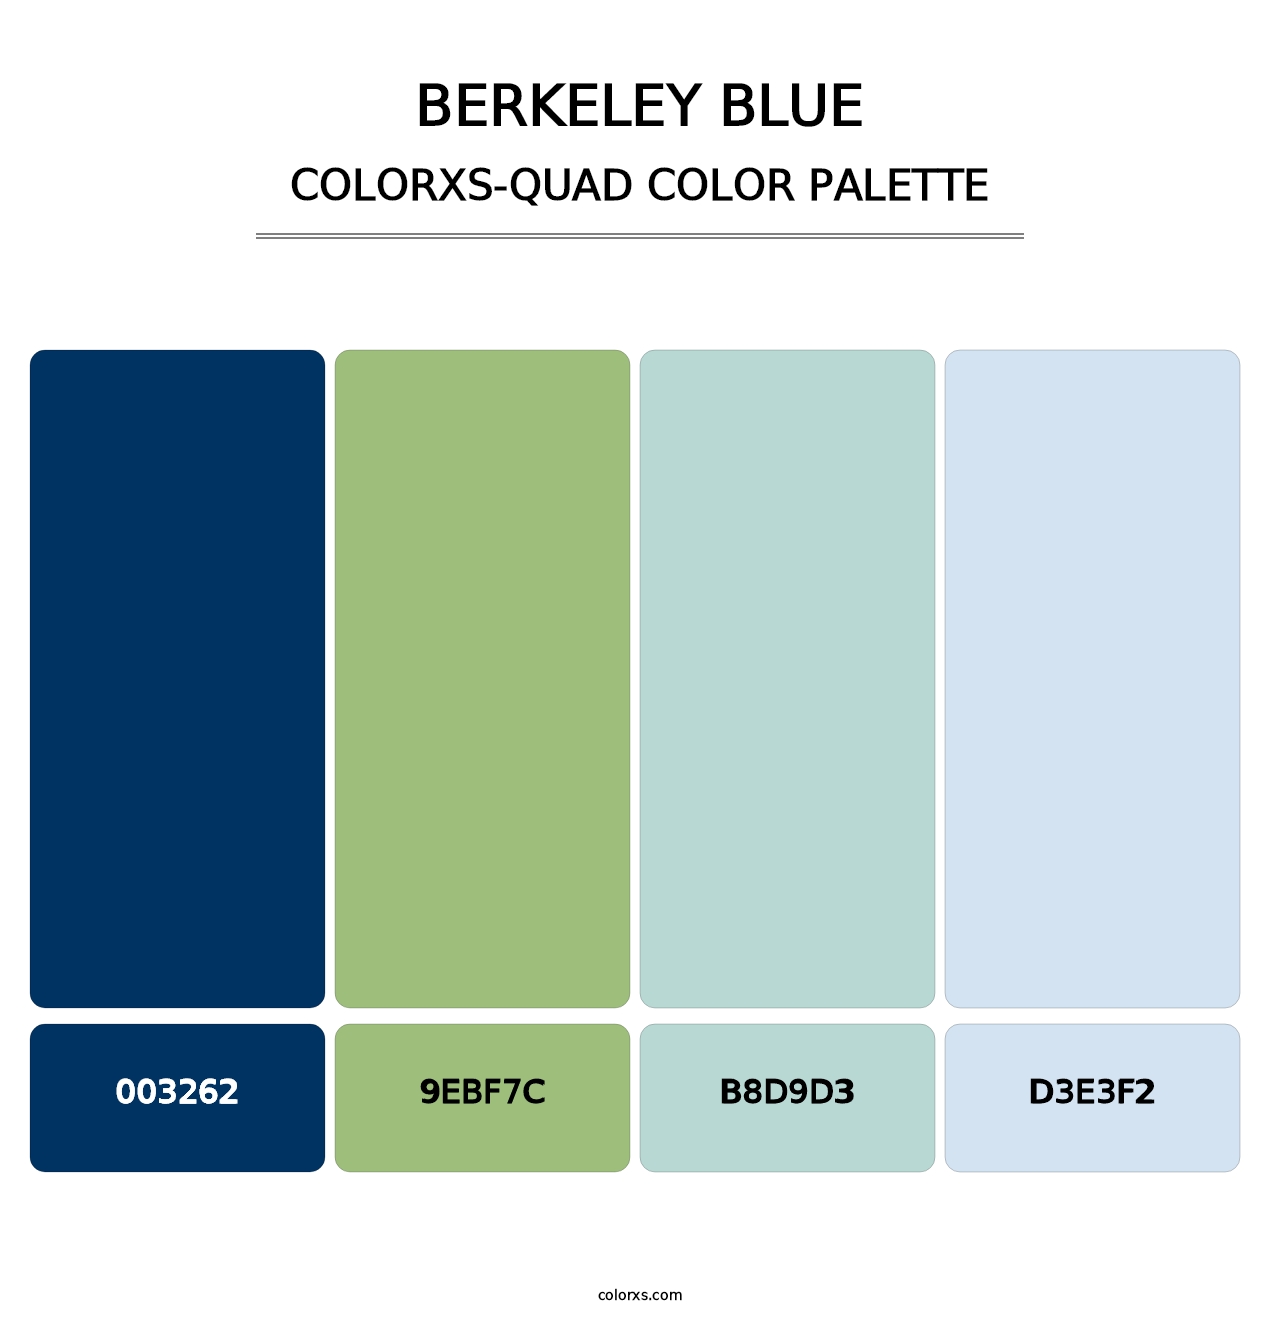 Berkeley Blue - Colorxs Quad Palette